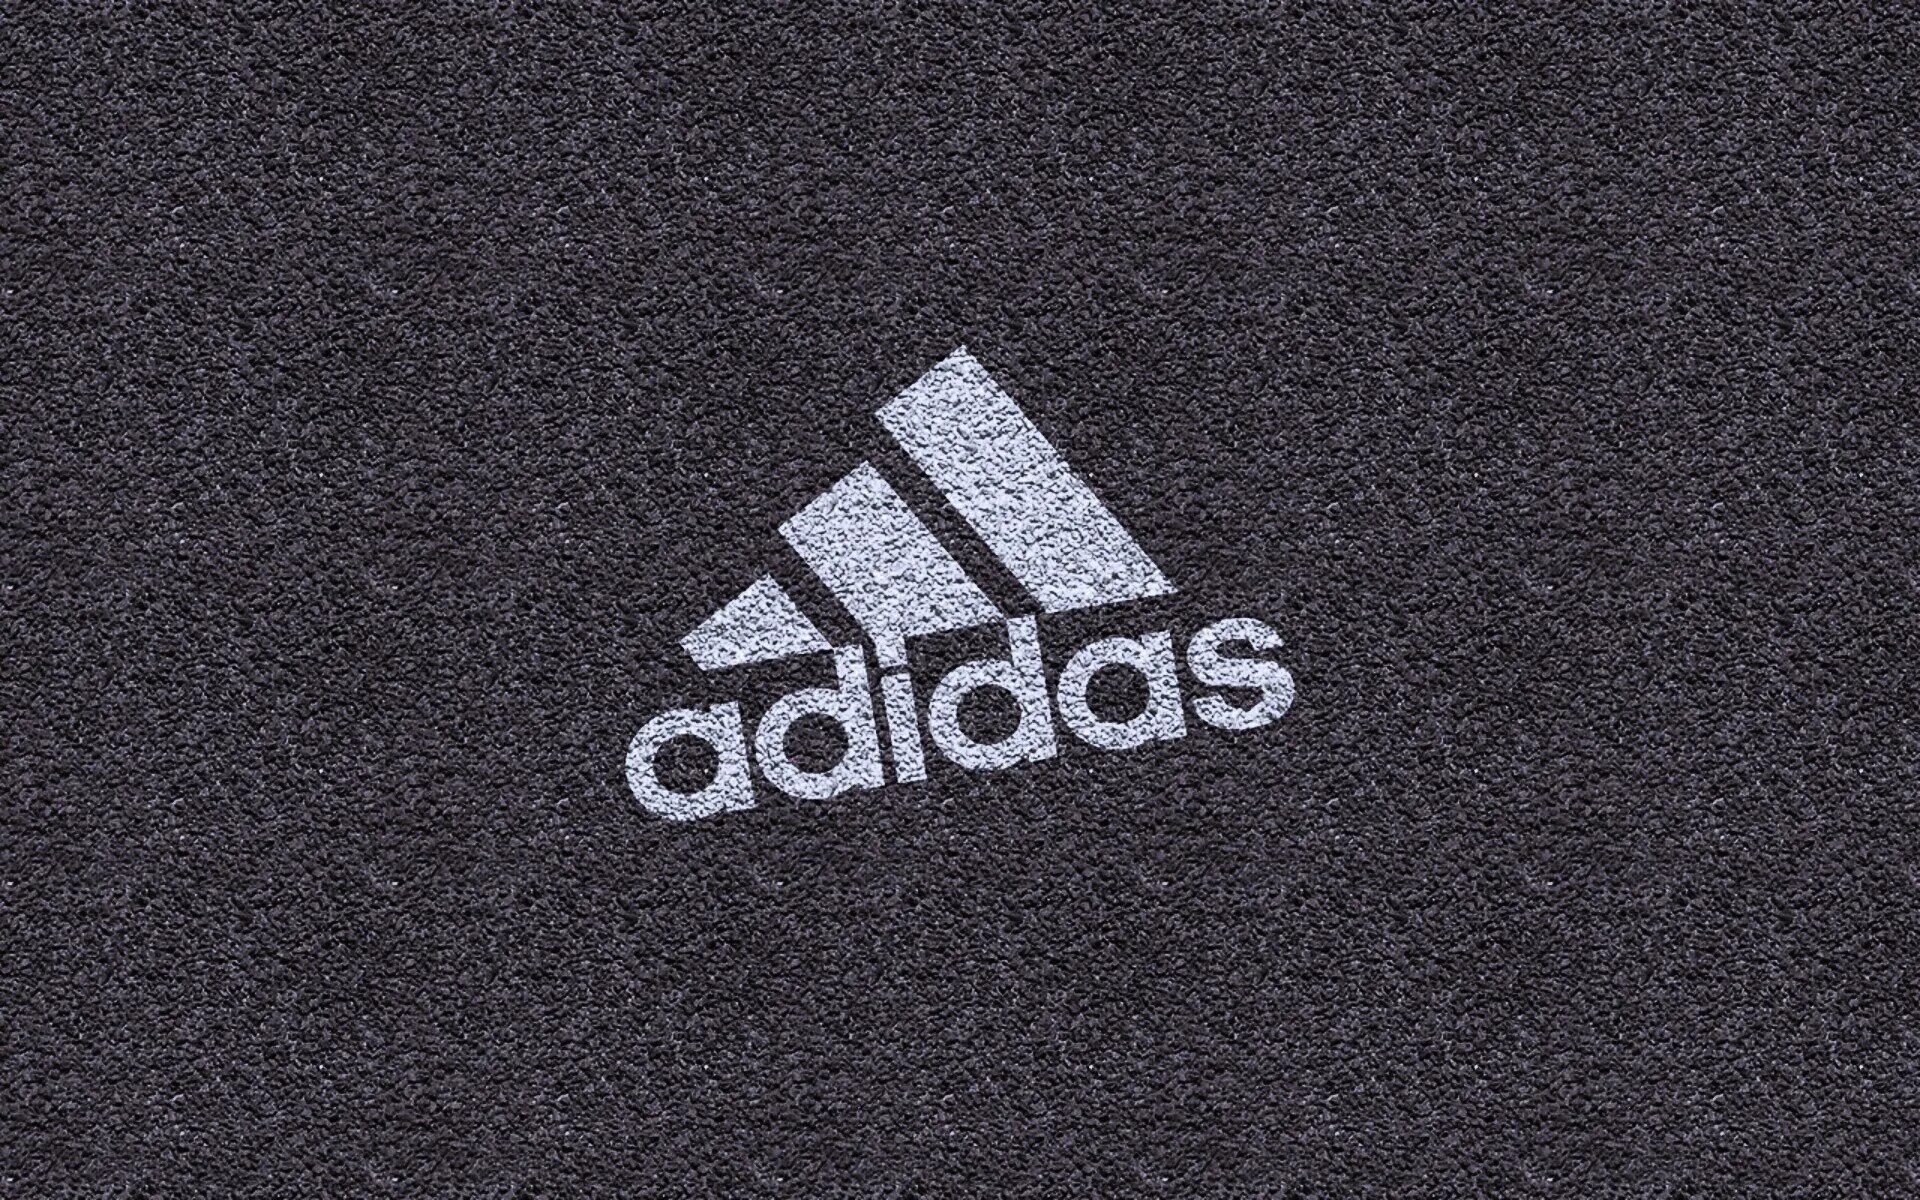 Адидас. Картинки адидас. Adidas обои. Адидас лого. Фотография адидас